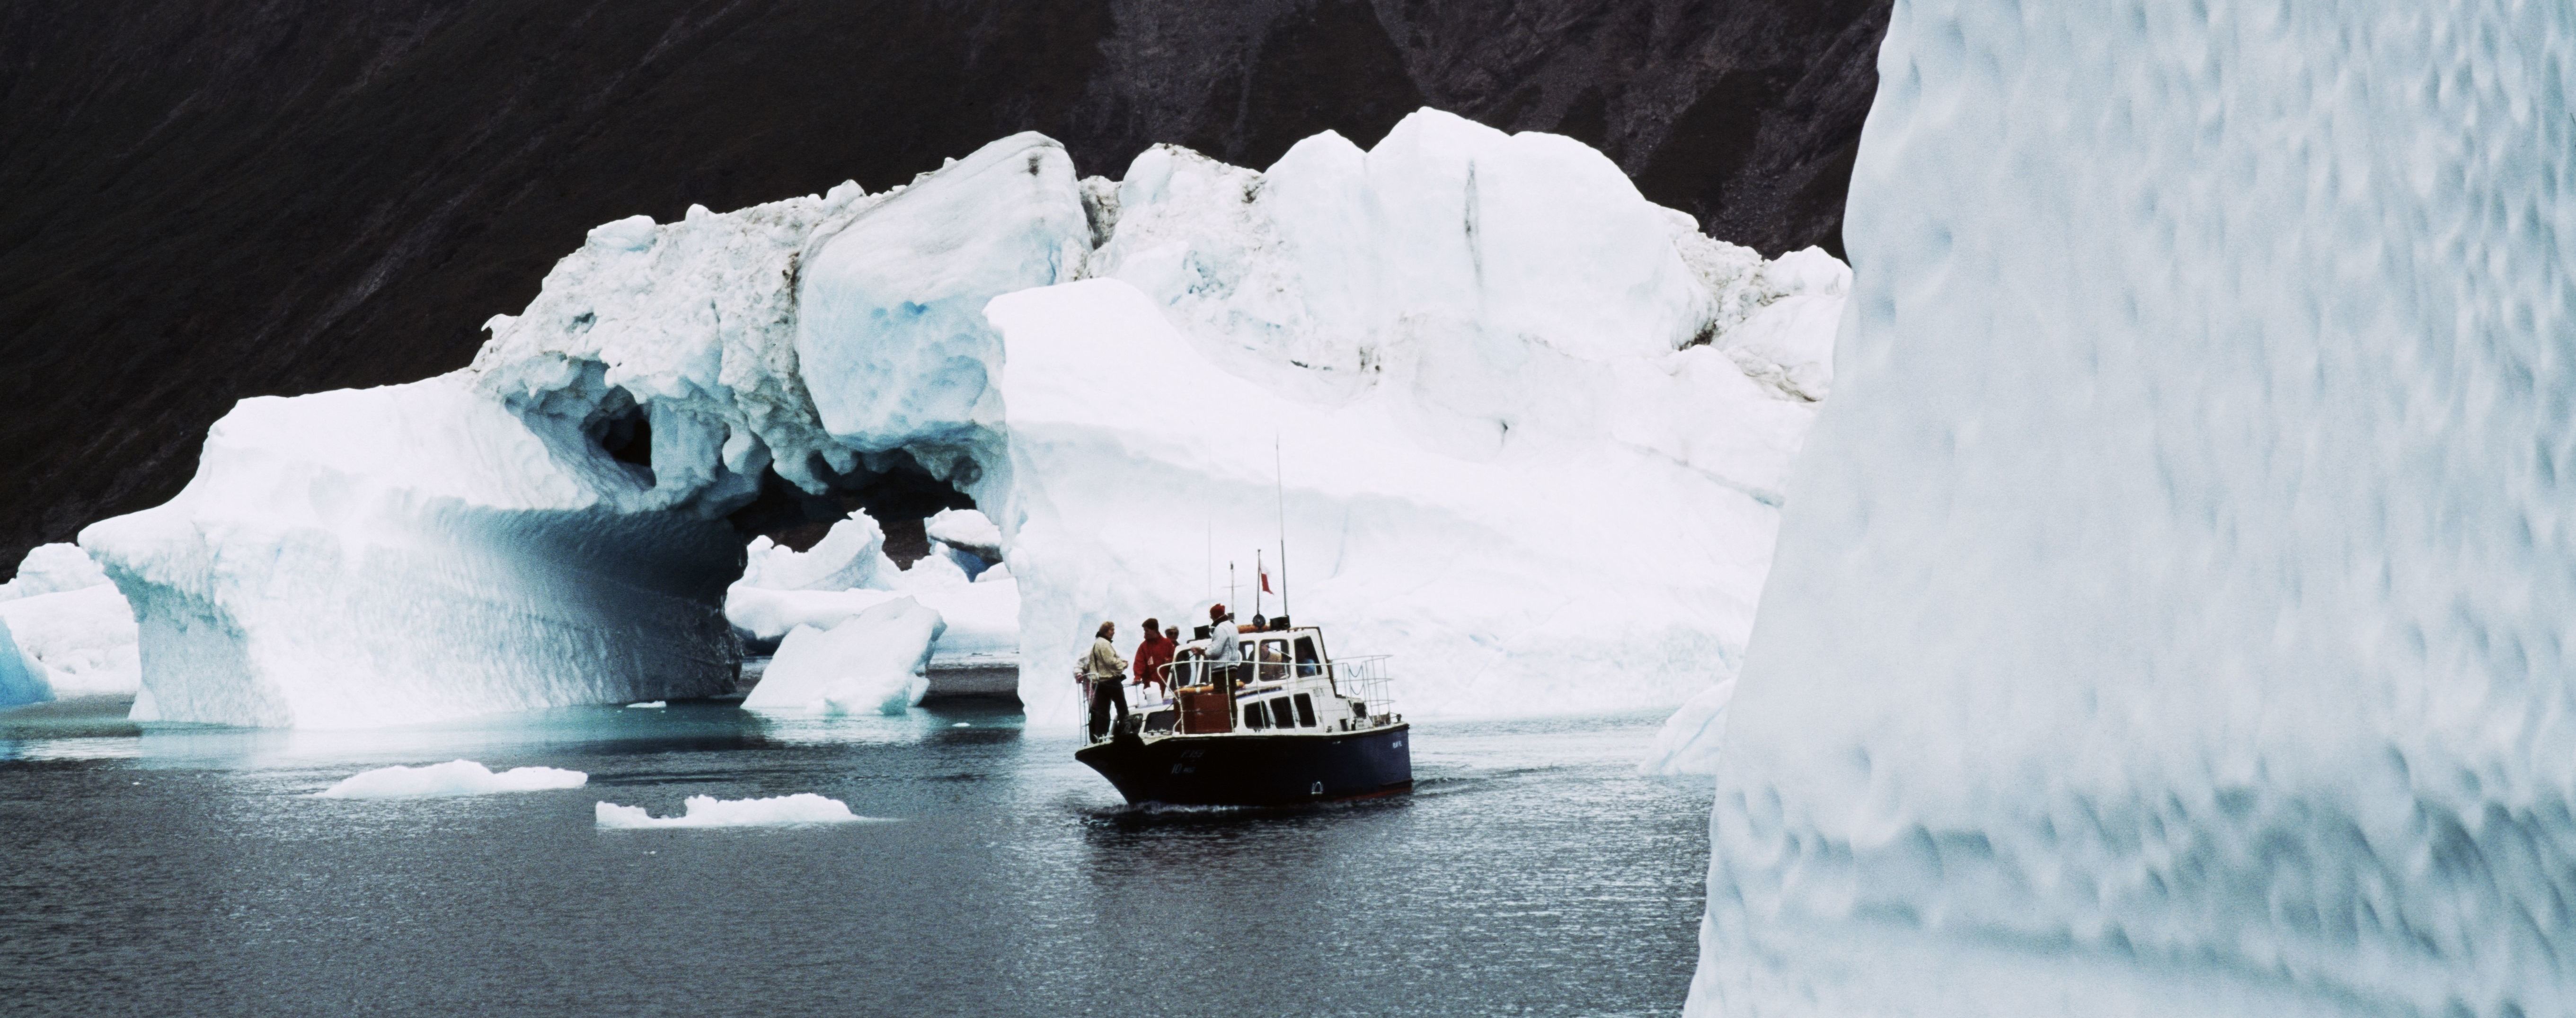 Ученые обеспокоены быстрым таянием ледника в Гренландии и появлению темных водорослей на нем